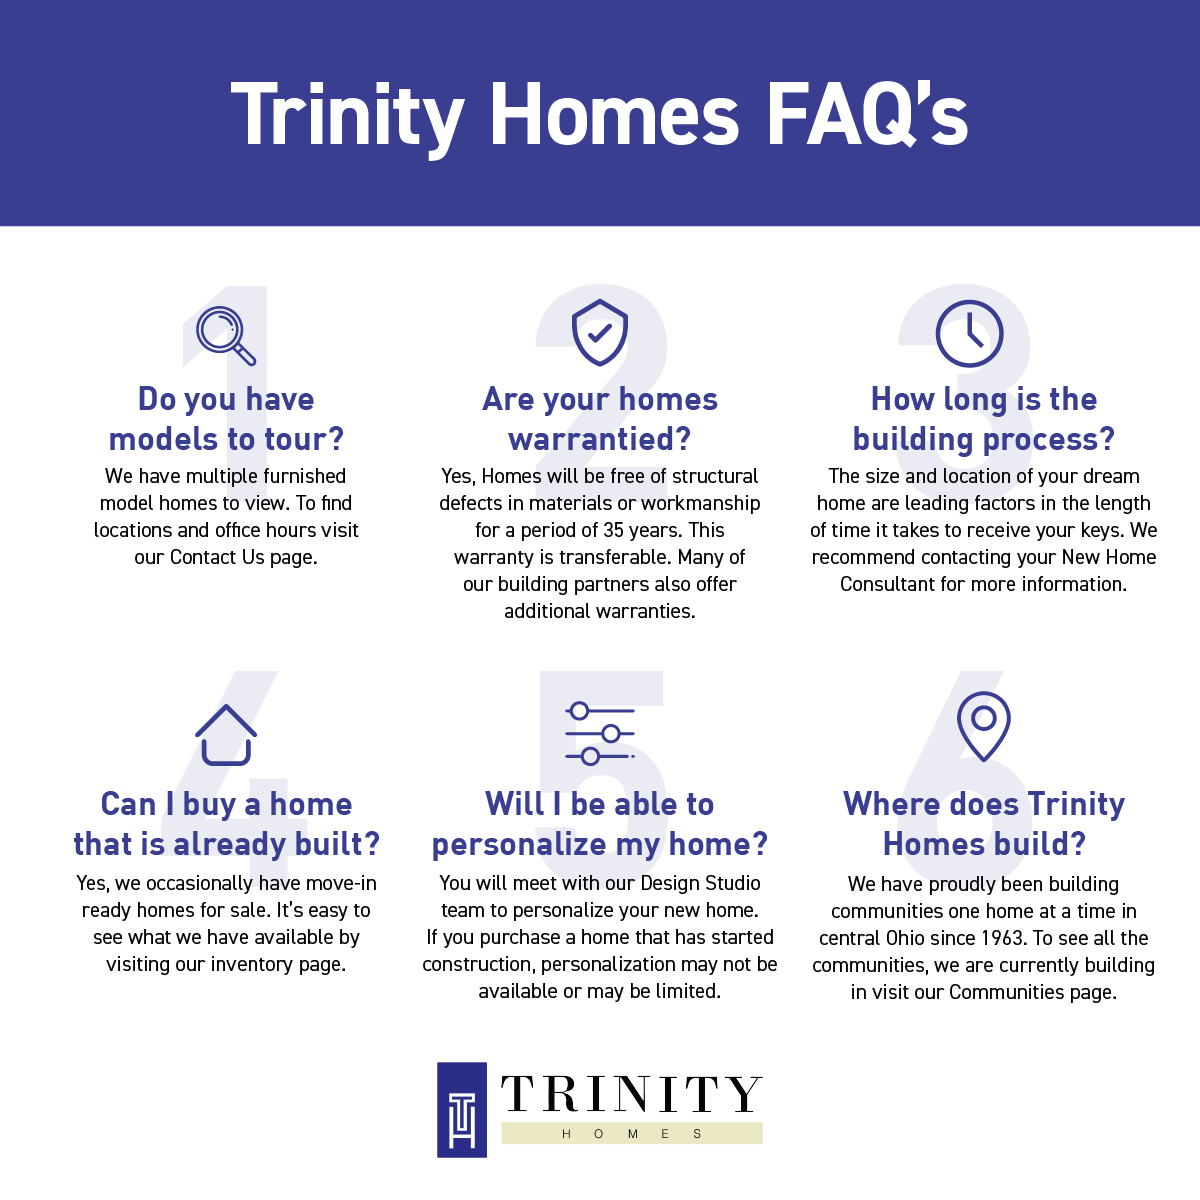 Trinity Homes FAQ infographic.